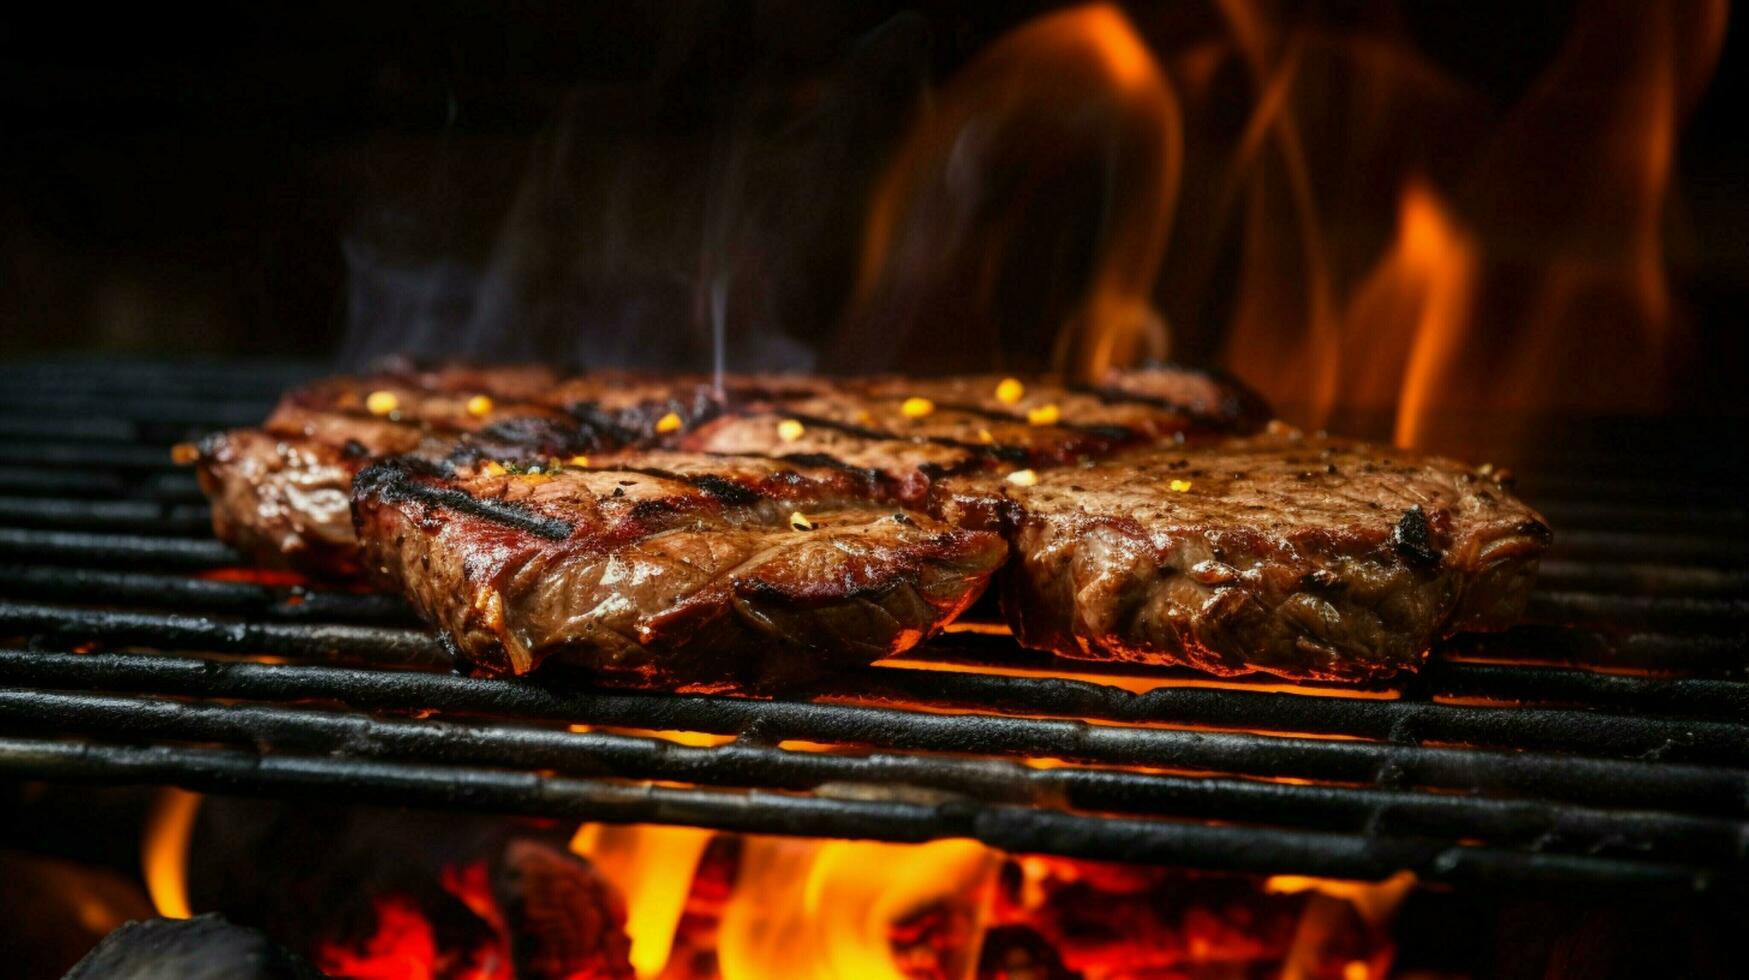 vlam grillen vlees Aan een gloeiend steenkool rooster foto